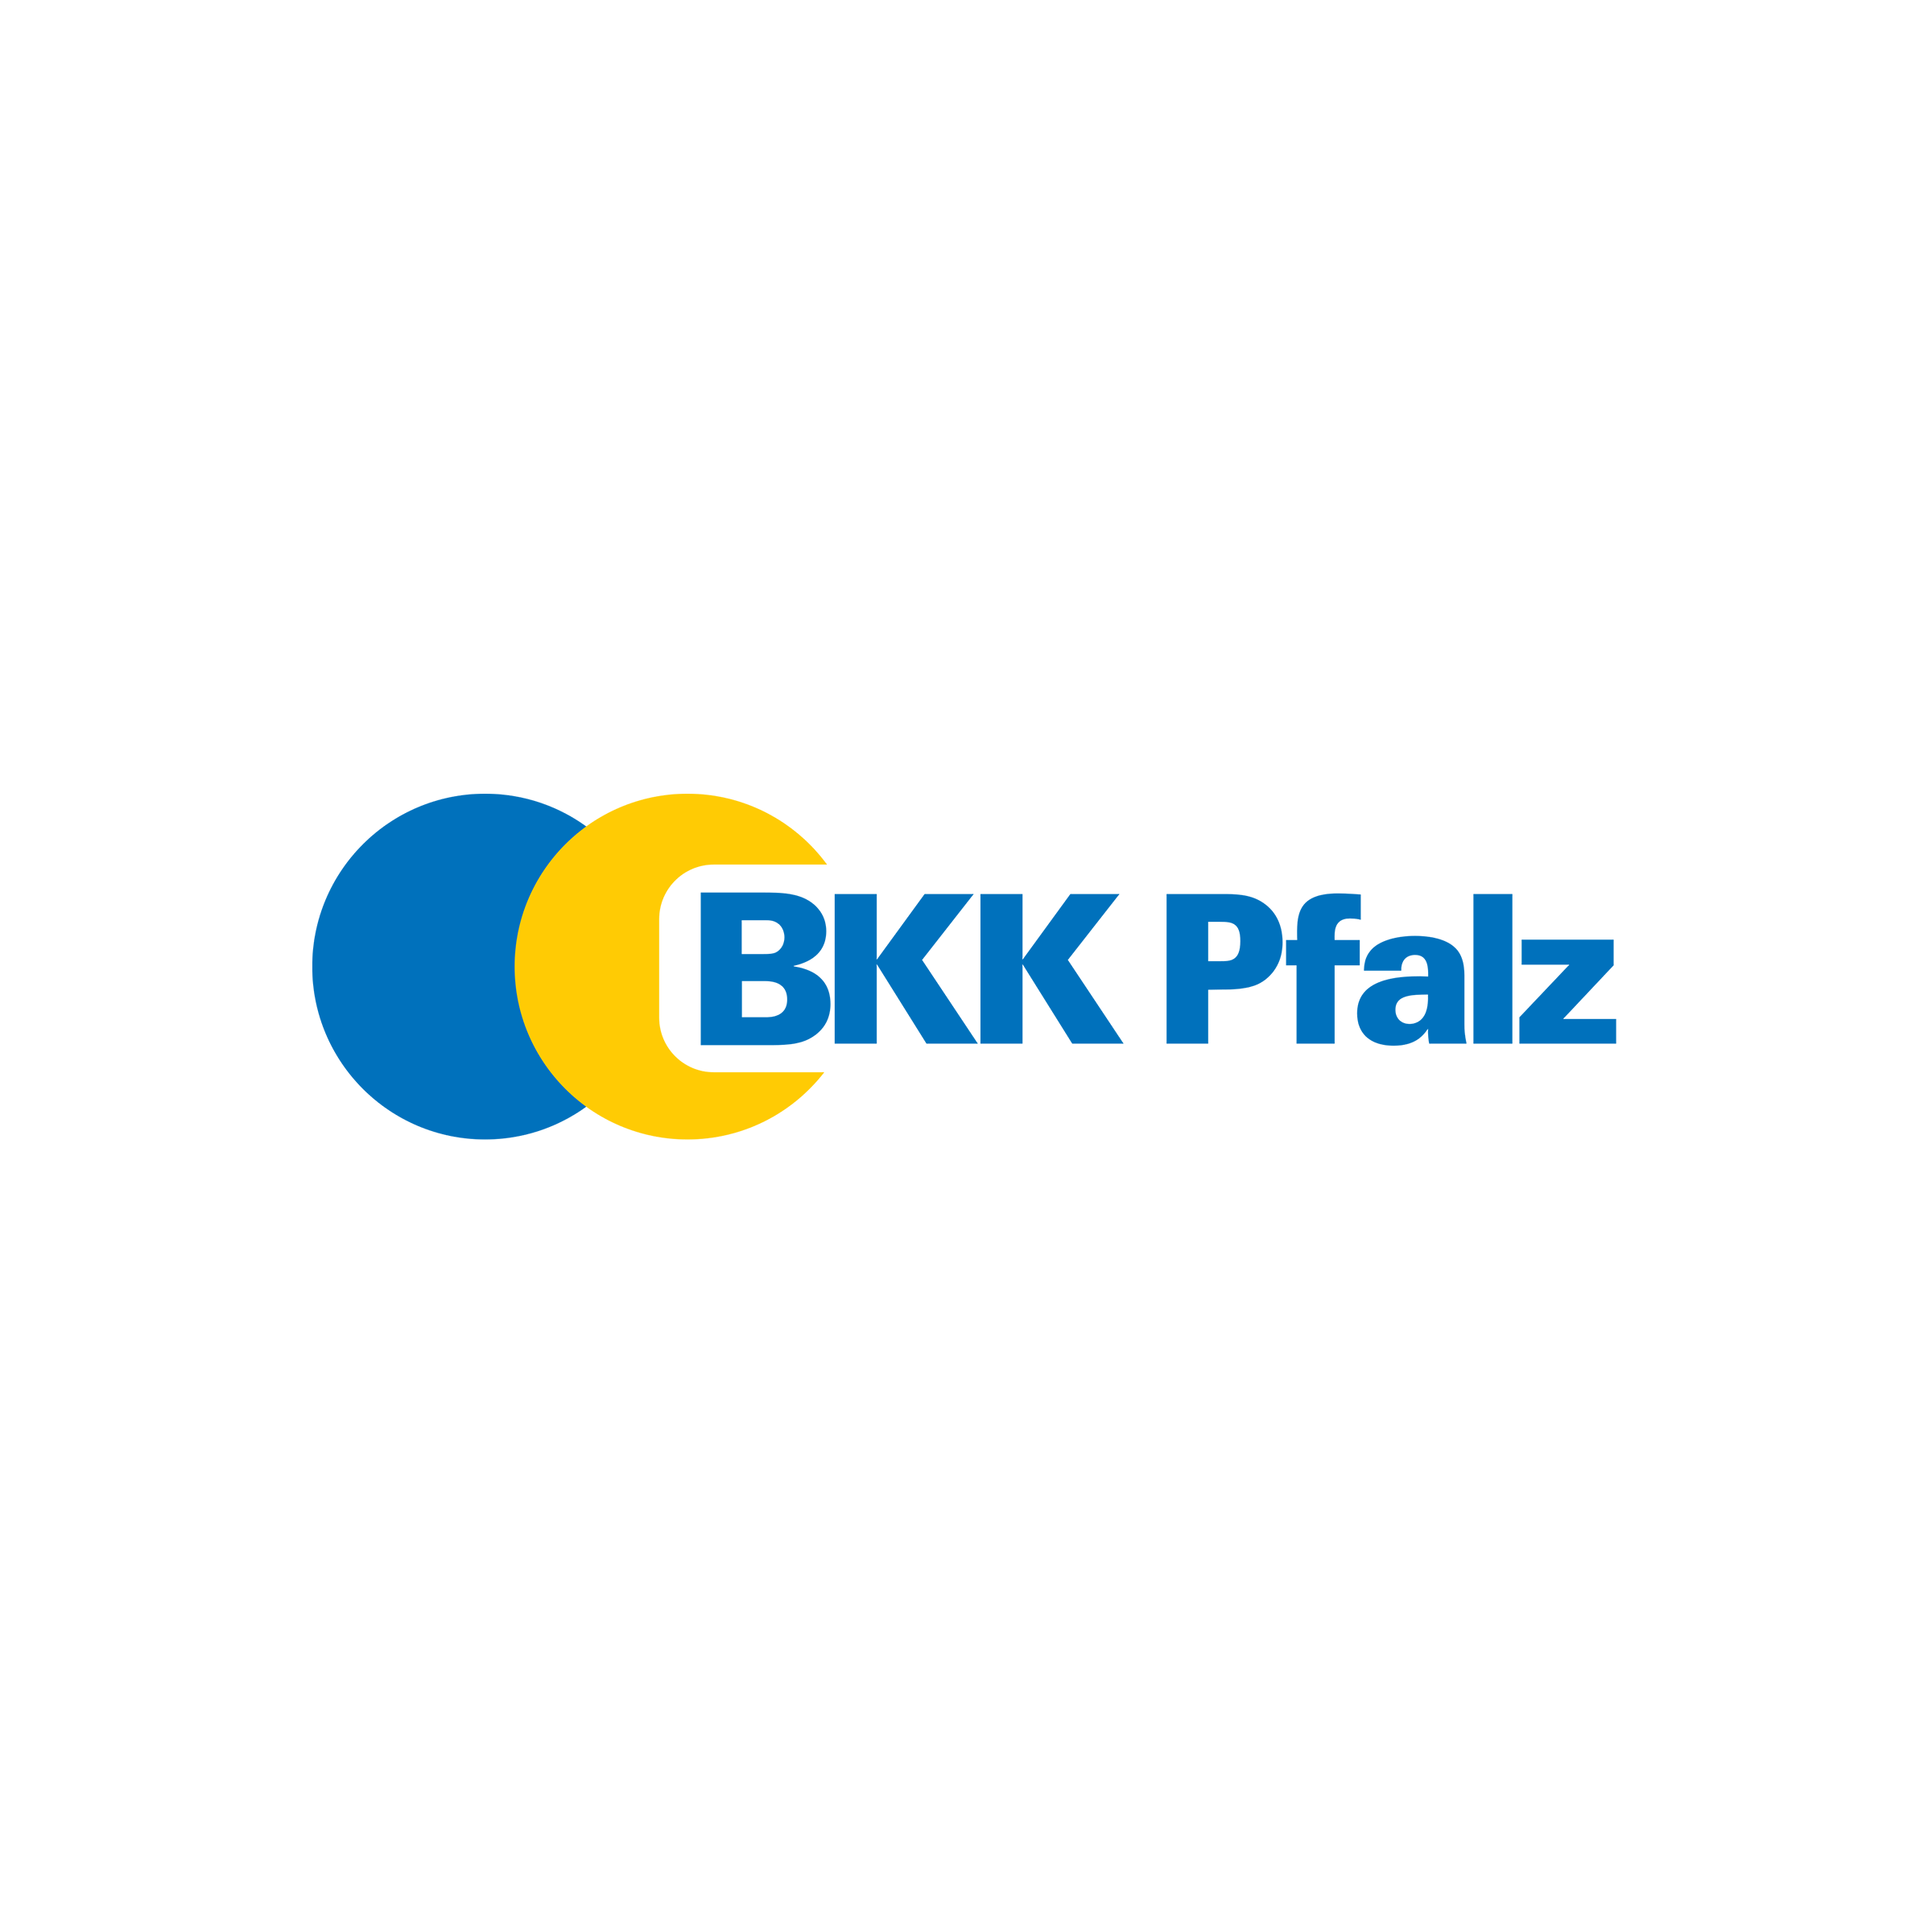 bkk pfalz website